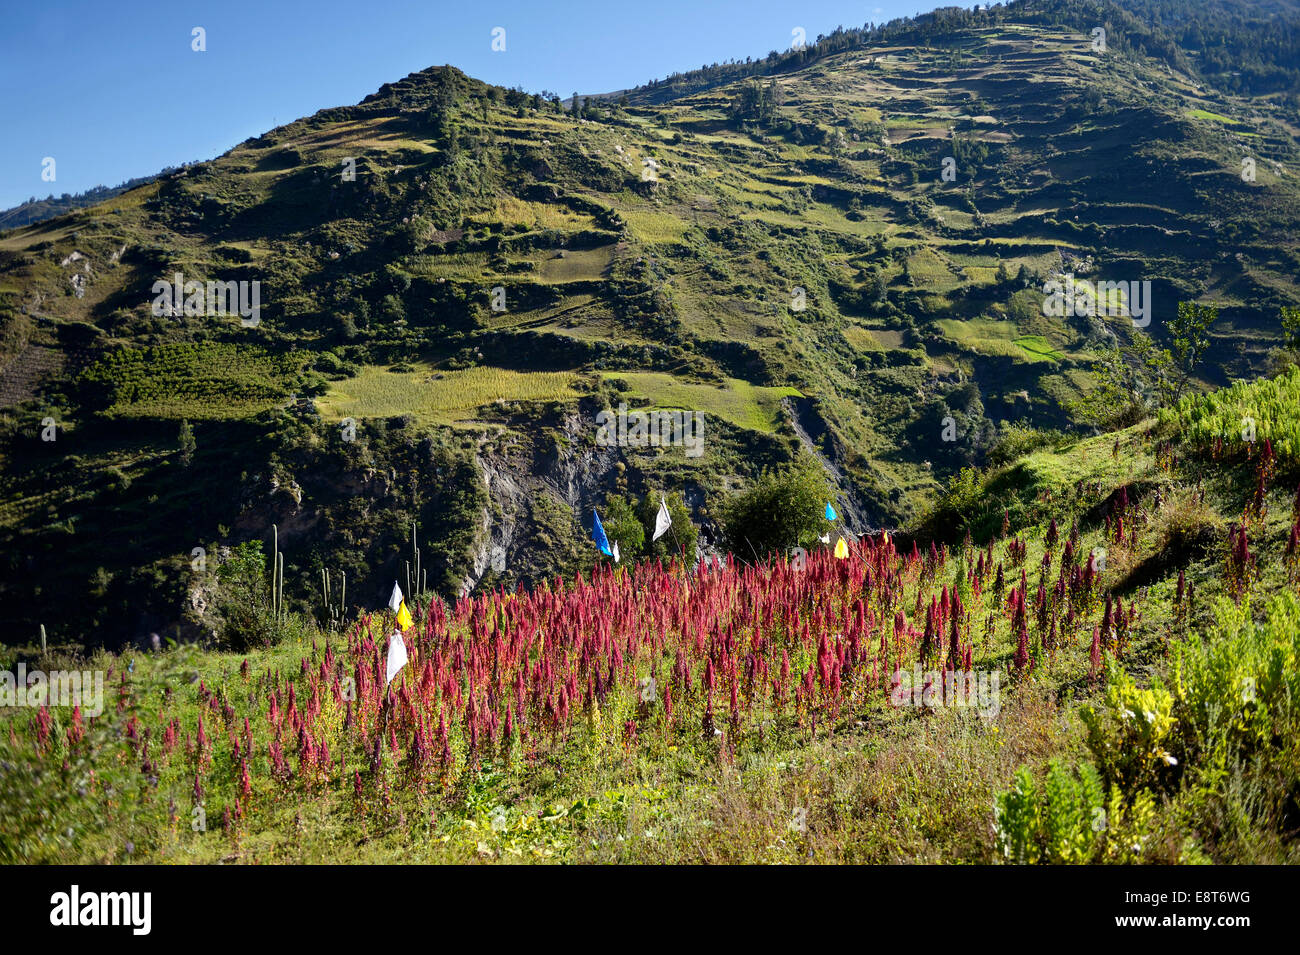 Quinoa field (Chenopodium quinoa) in the Peruvian Andes, Quivilla, Huanuco Province, Peru Stock Photo